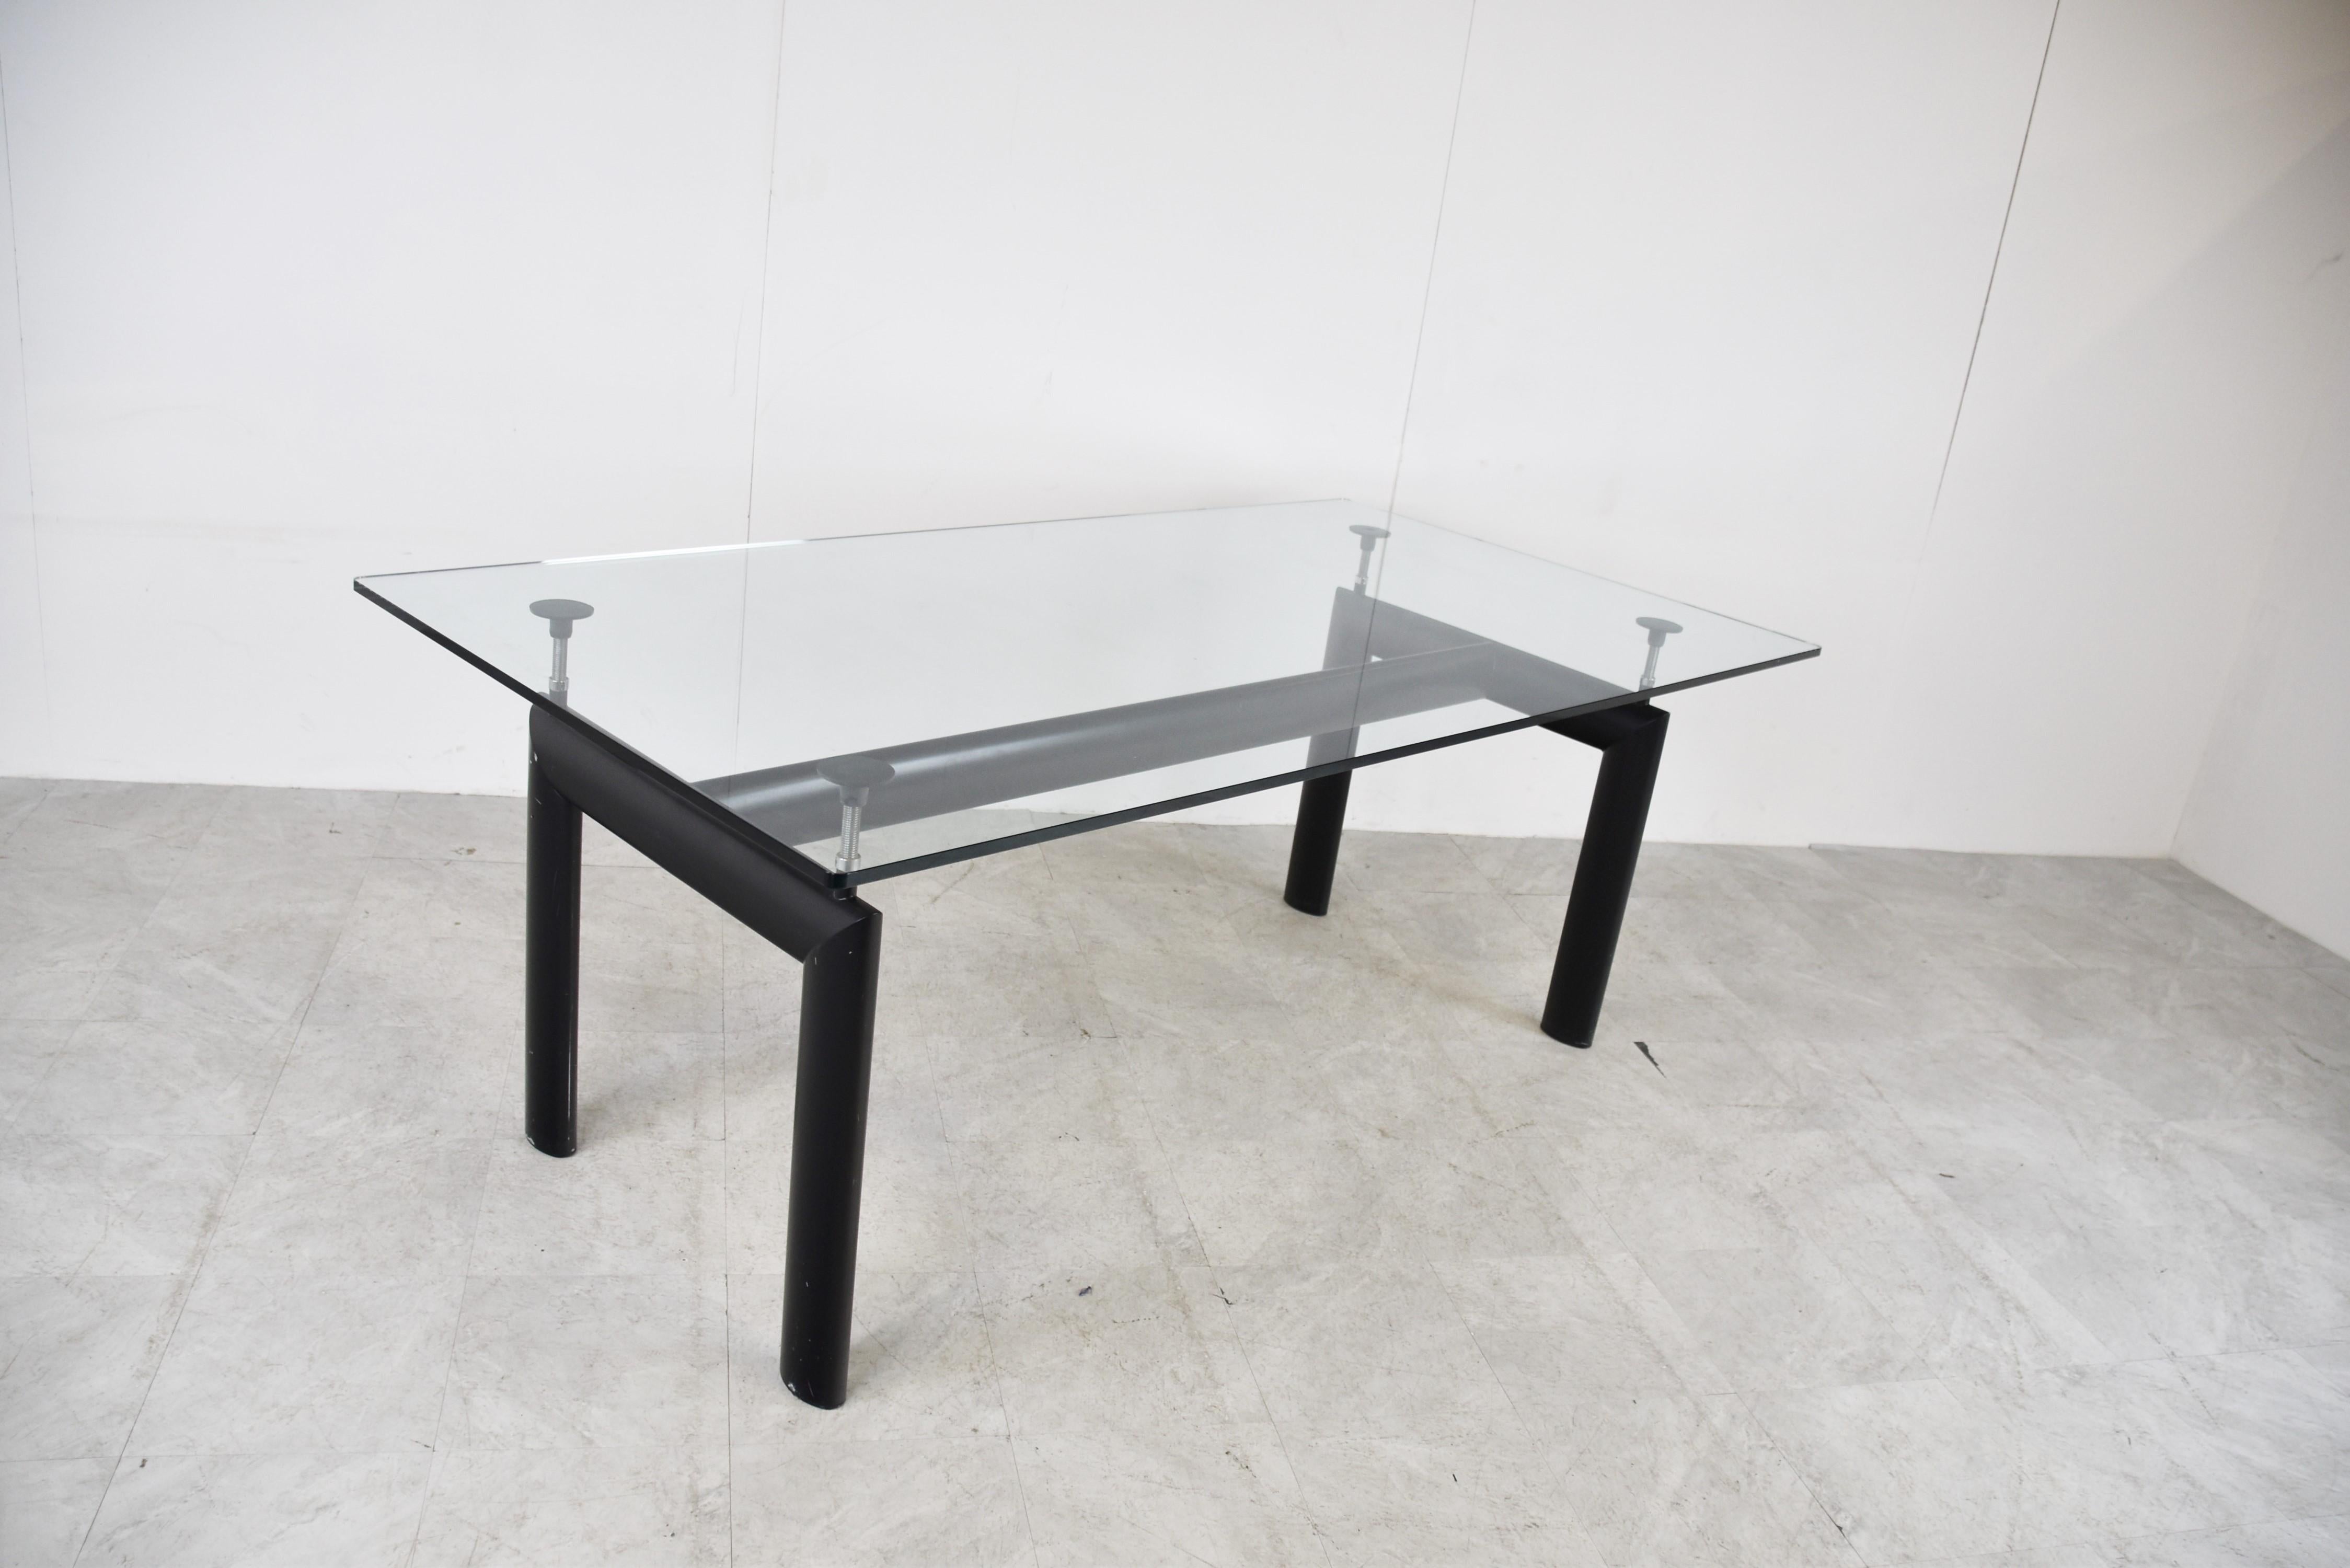 Table de salle à manger conçue par Le Corbusier, Pierre Jeanneret, Charlotte Perriand à l'origine en 1928 pour le Salon d'Automne à Paris et relancée en 1974 par Cassina.

Elle se compose d'une base en aluminium noir avec 4 supports réglables qui